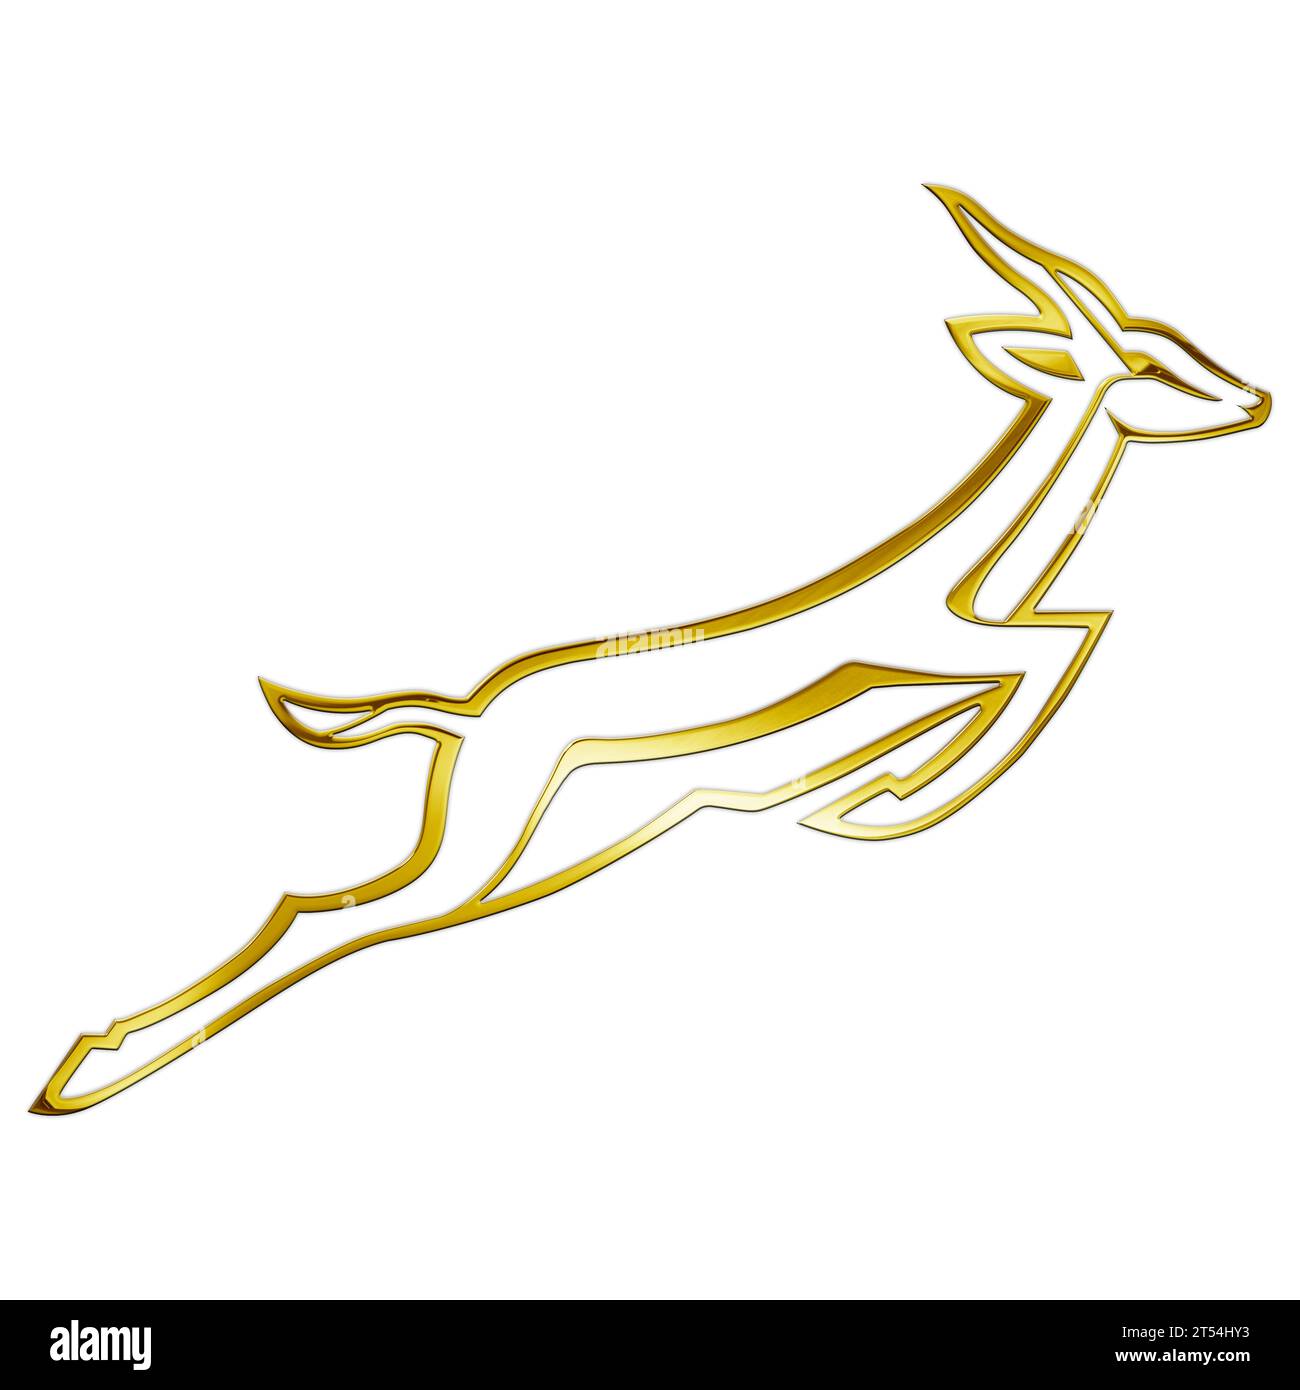 Logo doré de l'équipe sud-africaine de rugby, Springboks, champion du monde 2023, illustration Banque D'Images